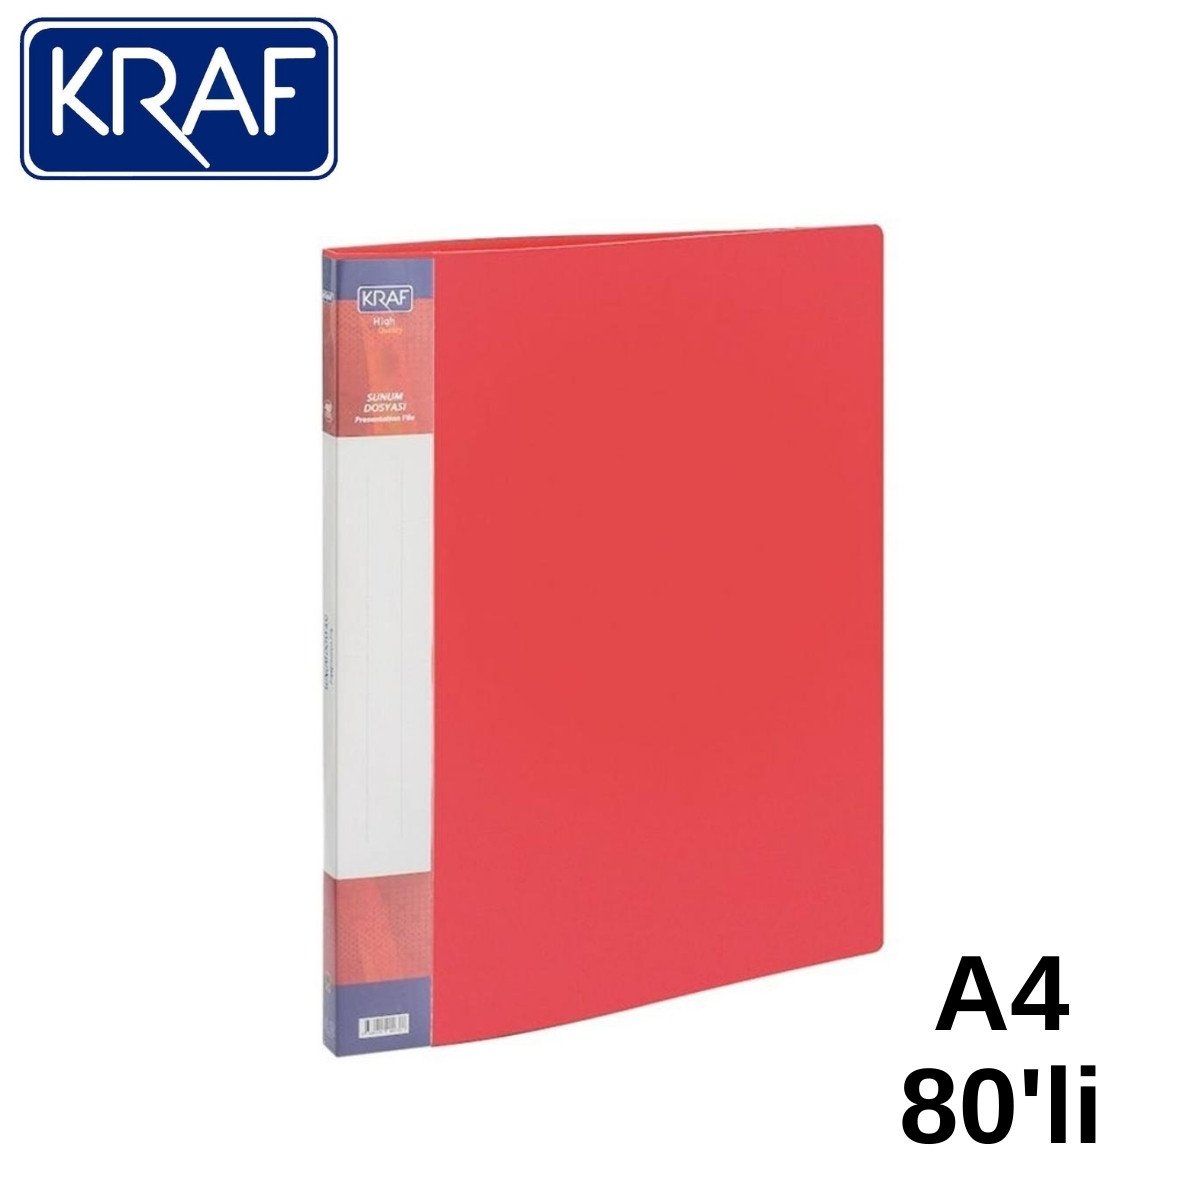 Kraf Sunum Dosyası A4 80li Kırmızı